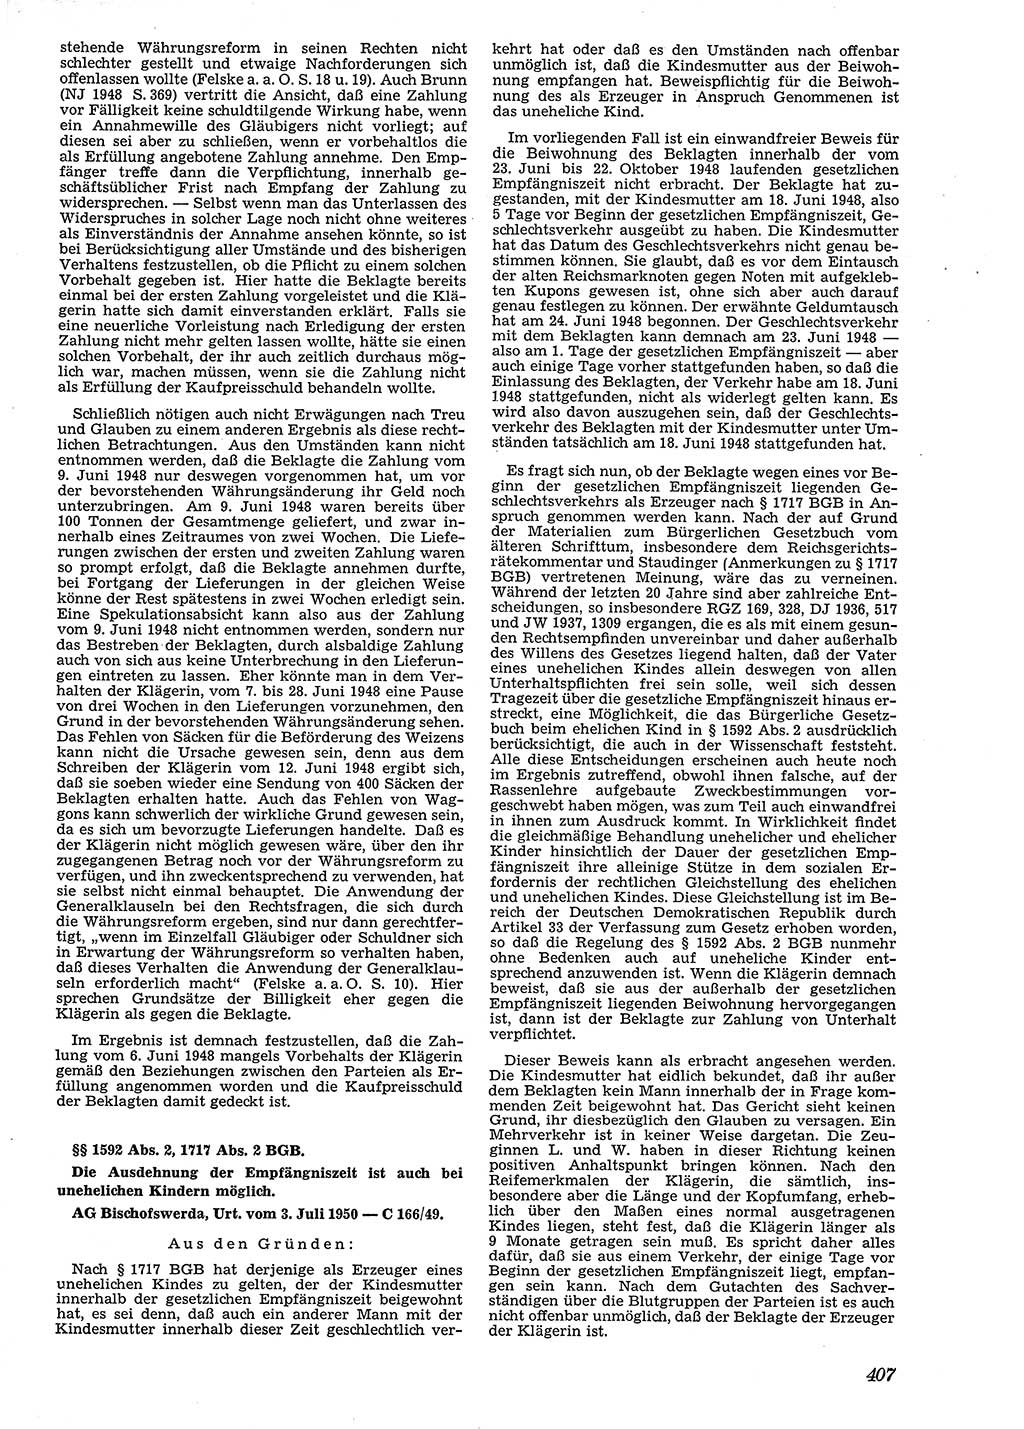 Neue Justiz (NJ), Zeitschrift für Recht und Rechtswissenschaft [Deutsche Demokratische Republik (DDR)], 4. Jahrgang 1950, Seite 407 (NJ DDR 1950, S. 407)